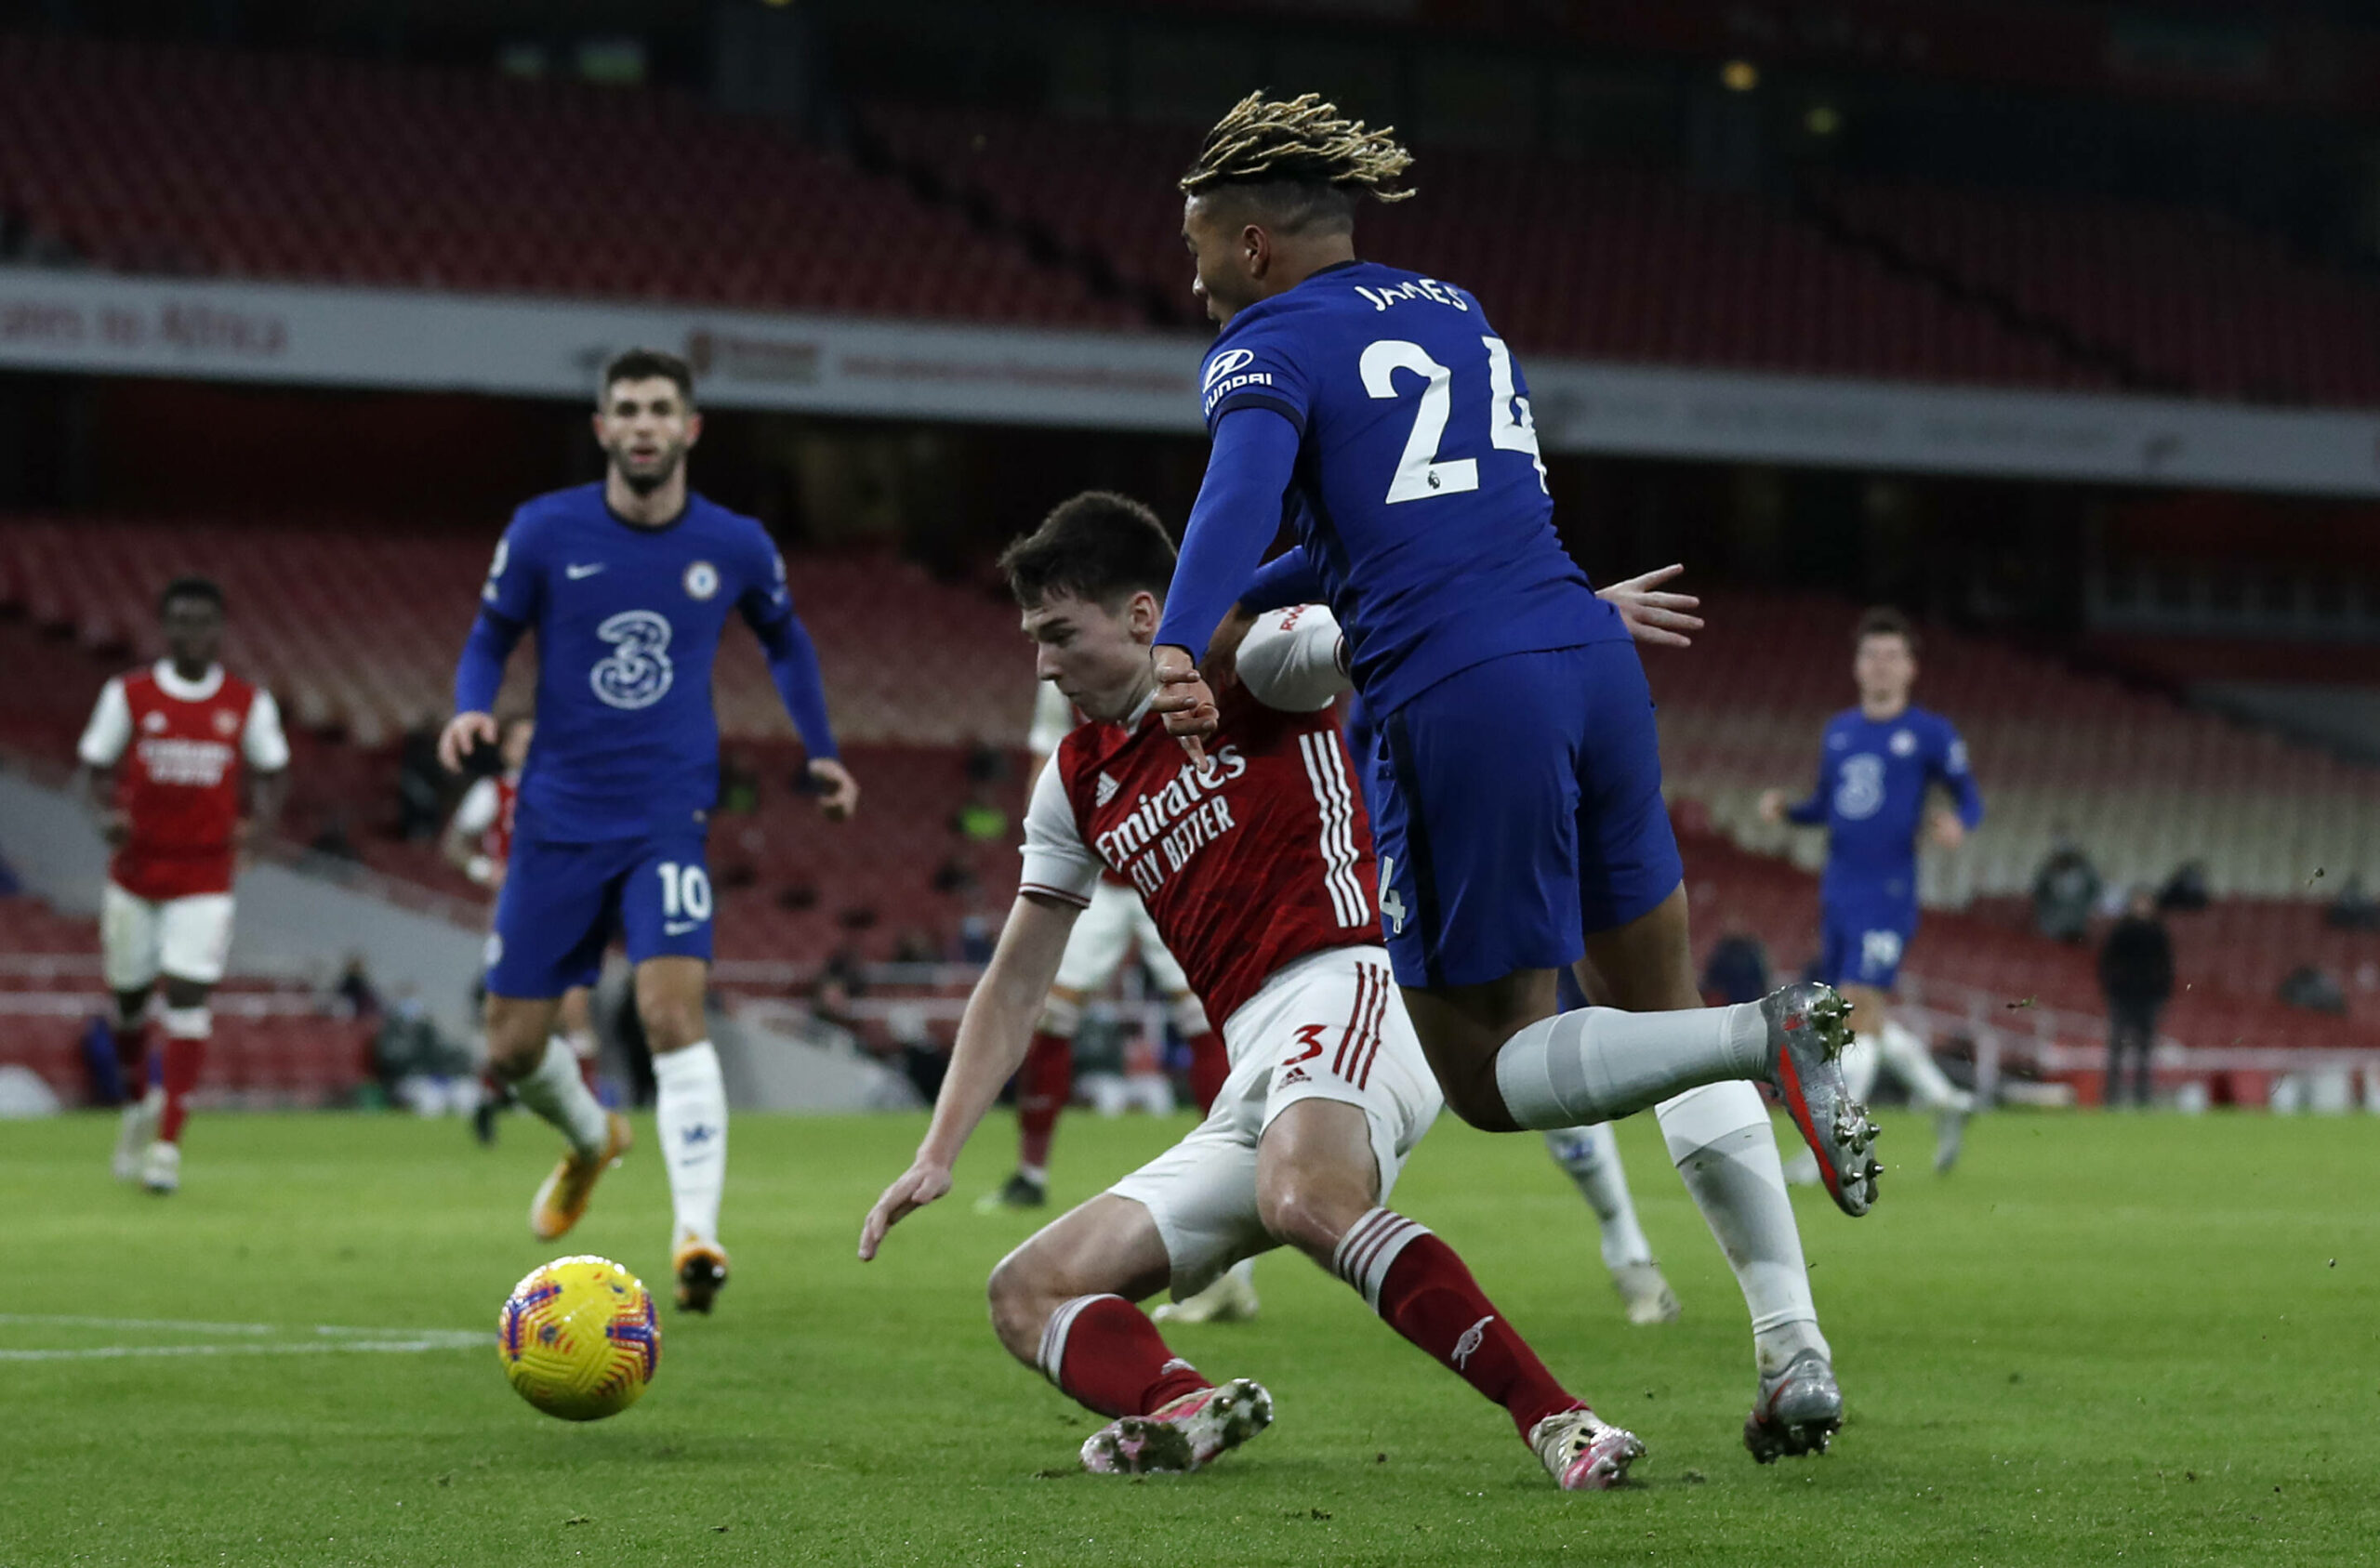 Chelsea empfängt Arsenal: Den Schwung aufrechterhalten